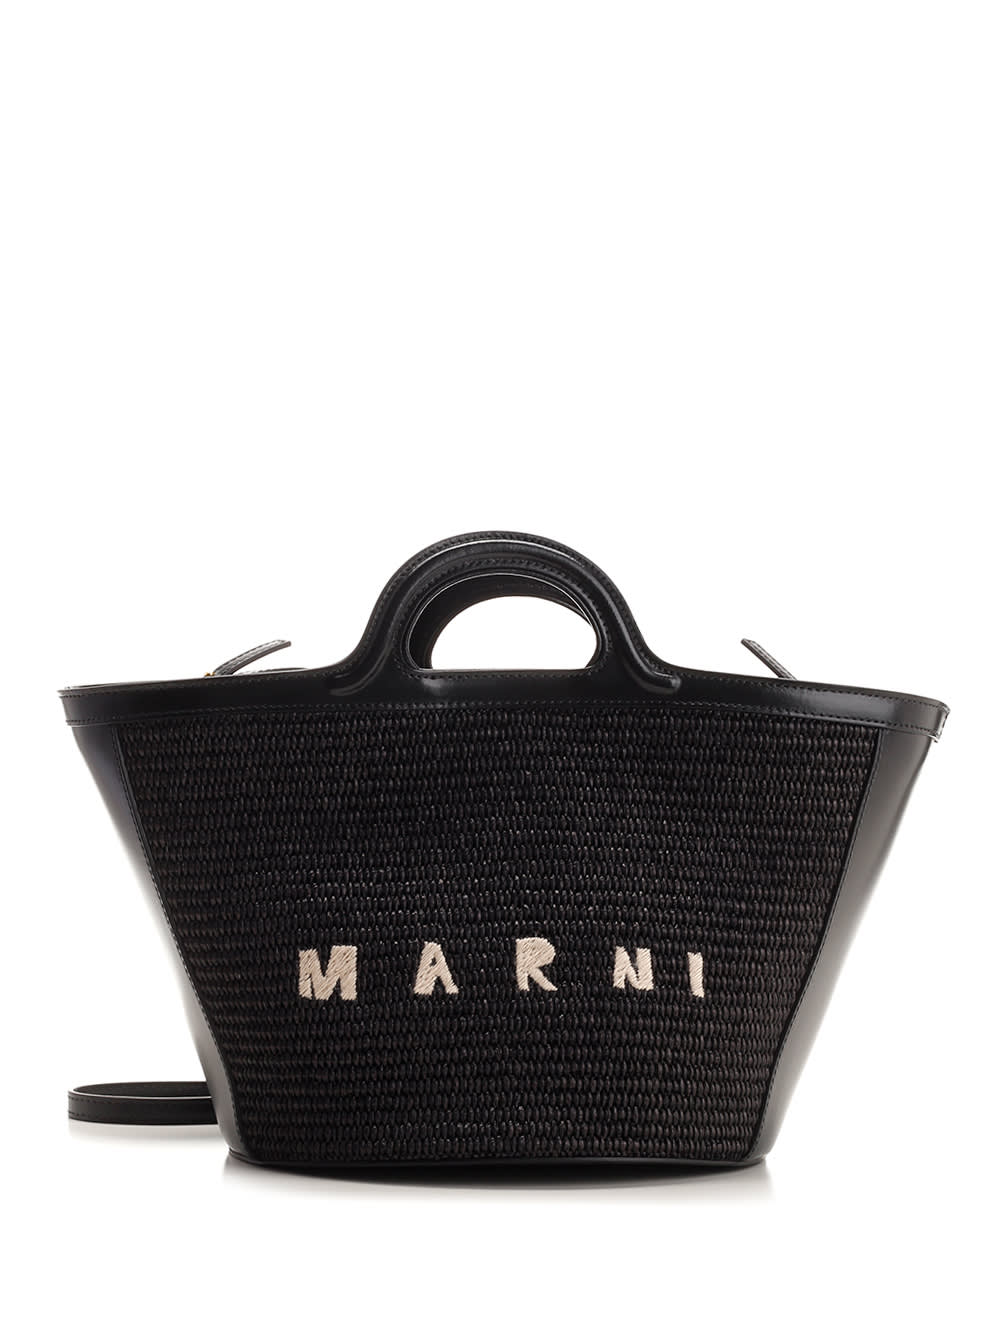 Marni Small Tropicalia Bag